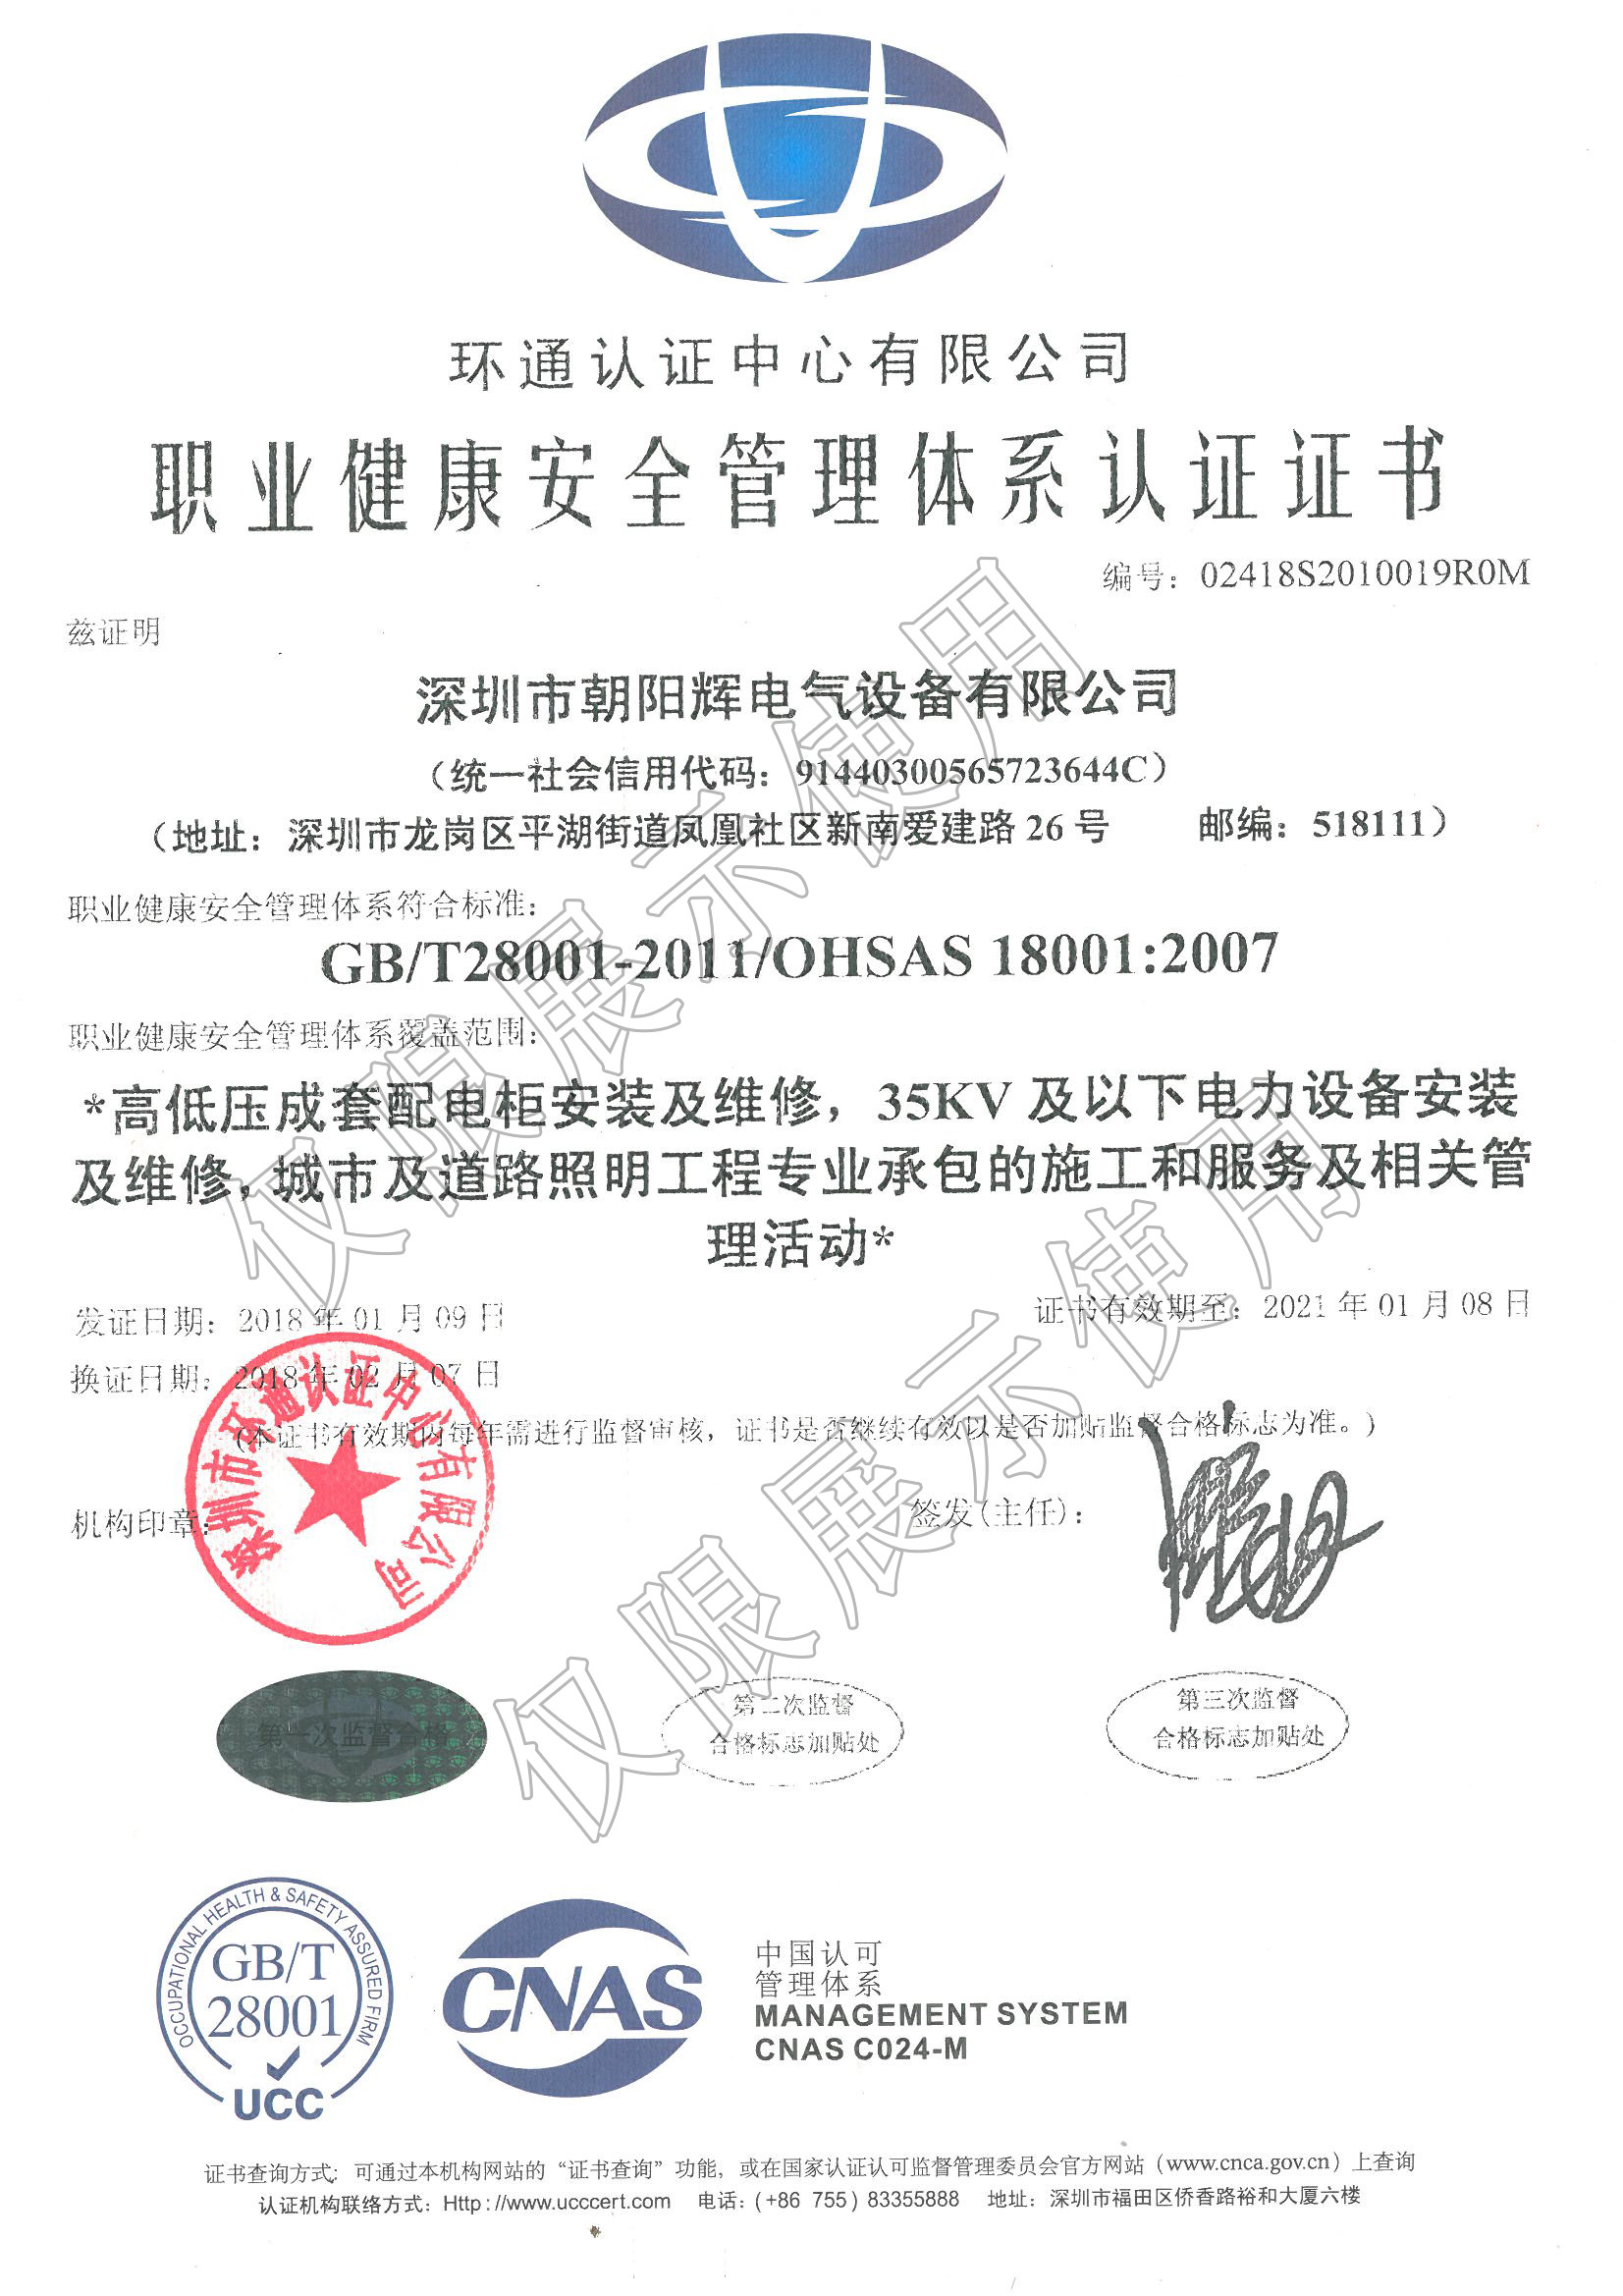 職業健康安全管理體系認證證書-中文_